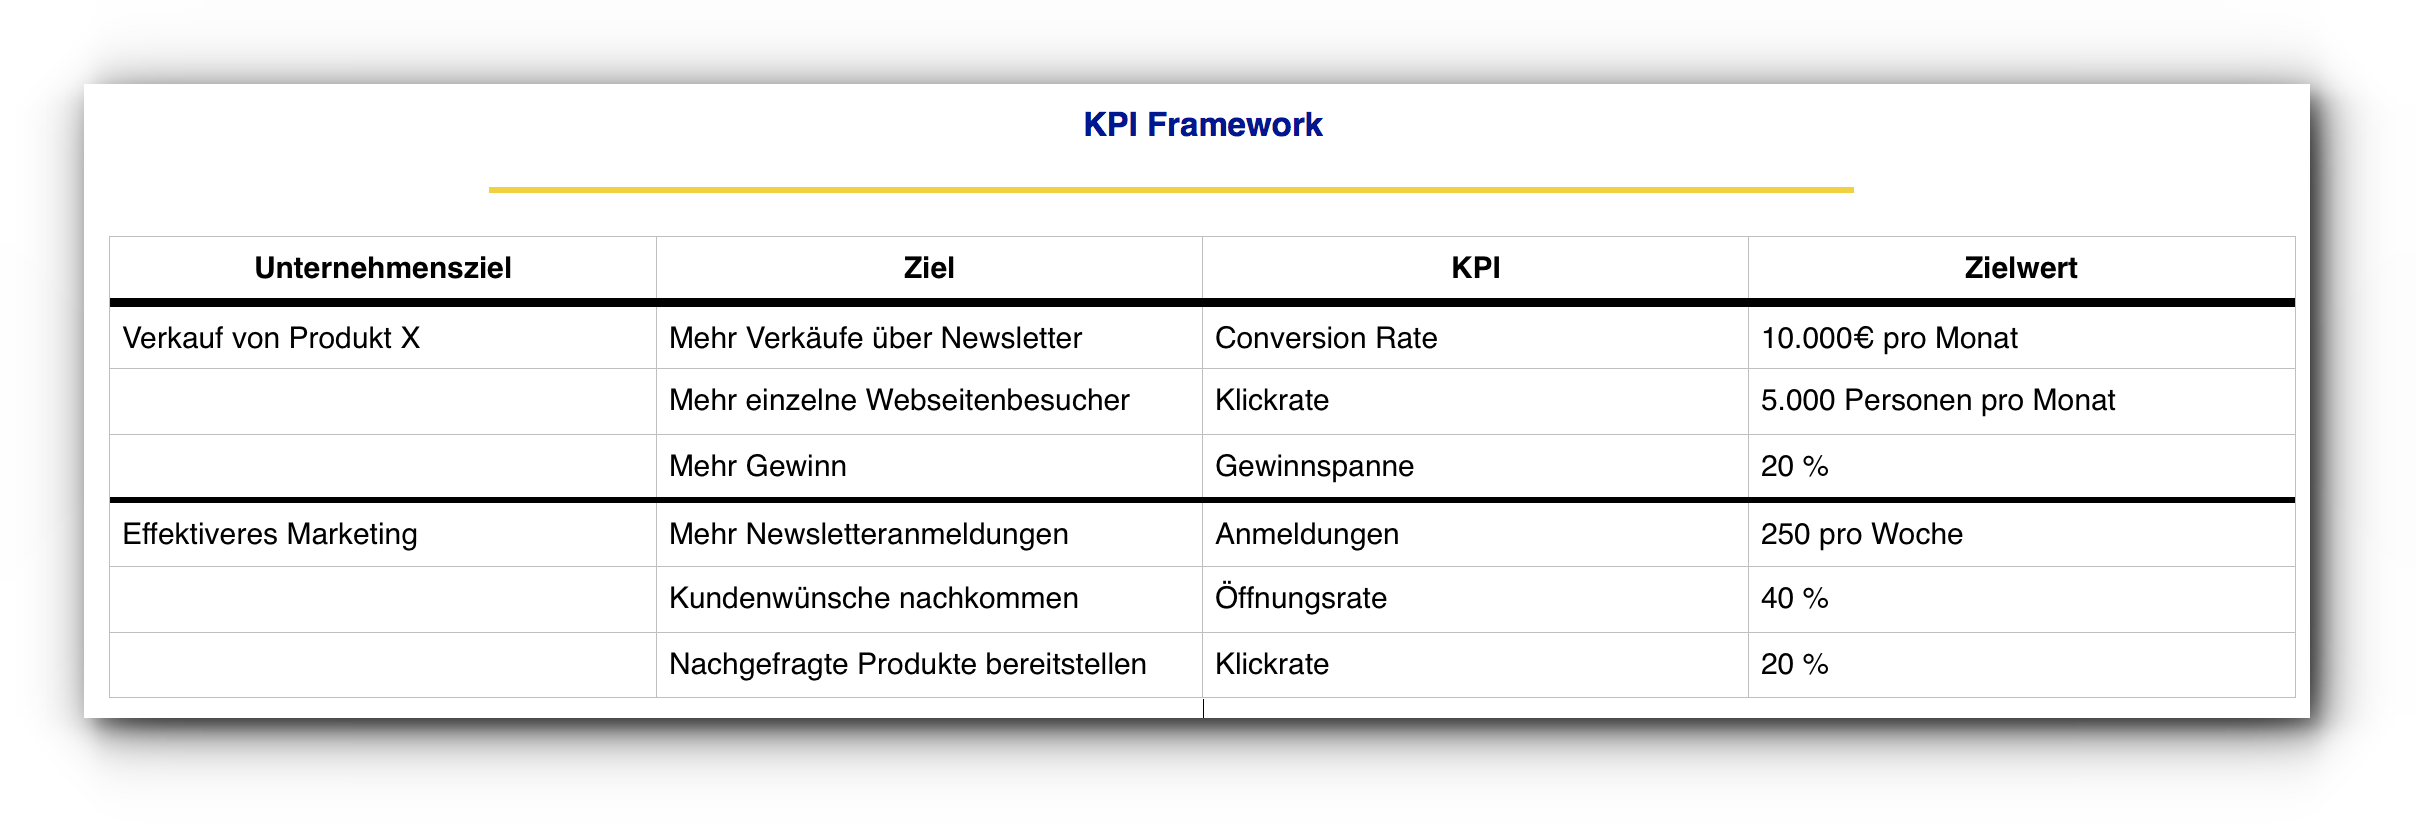 Abbildung eines KPI-Frameworks, welches Unternehmensziele zeigt